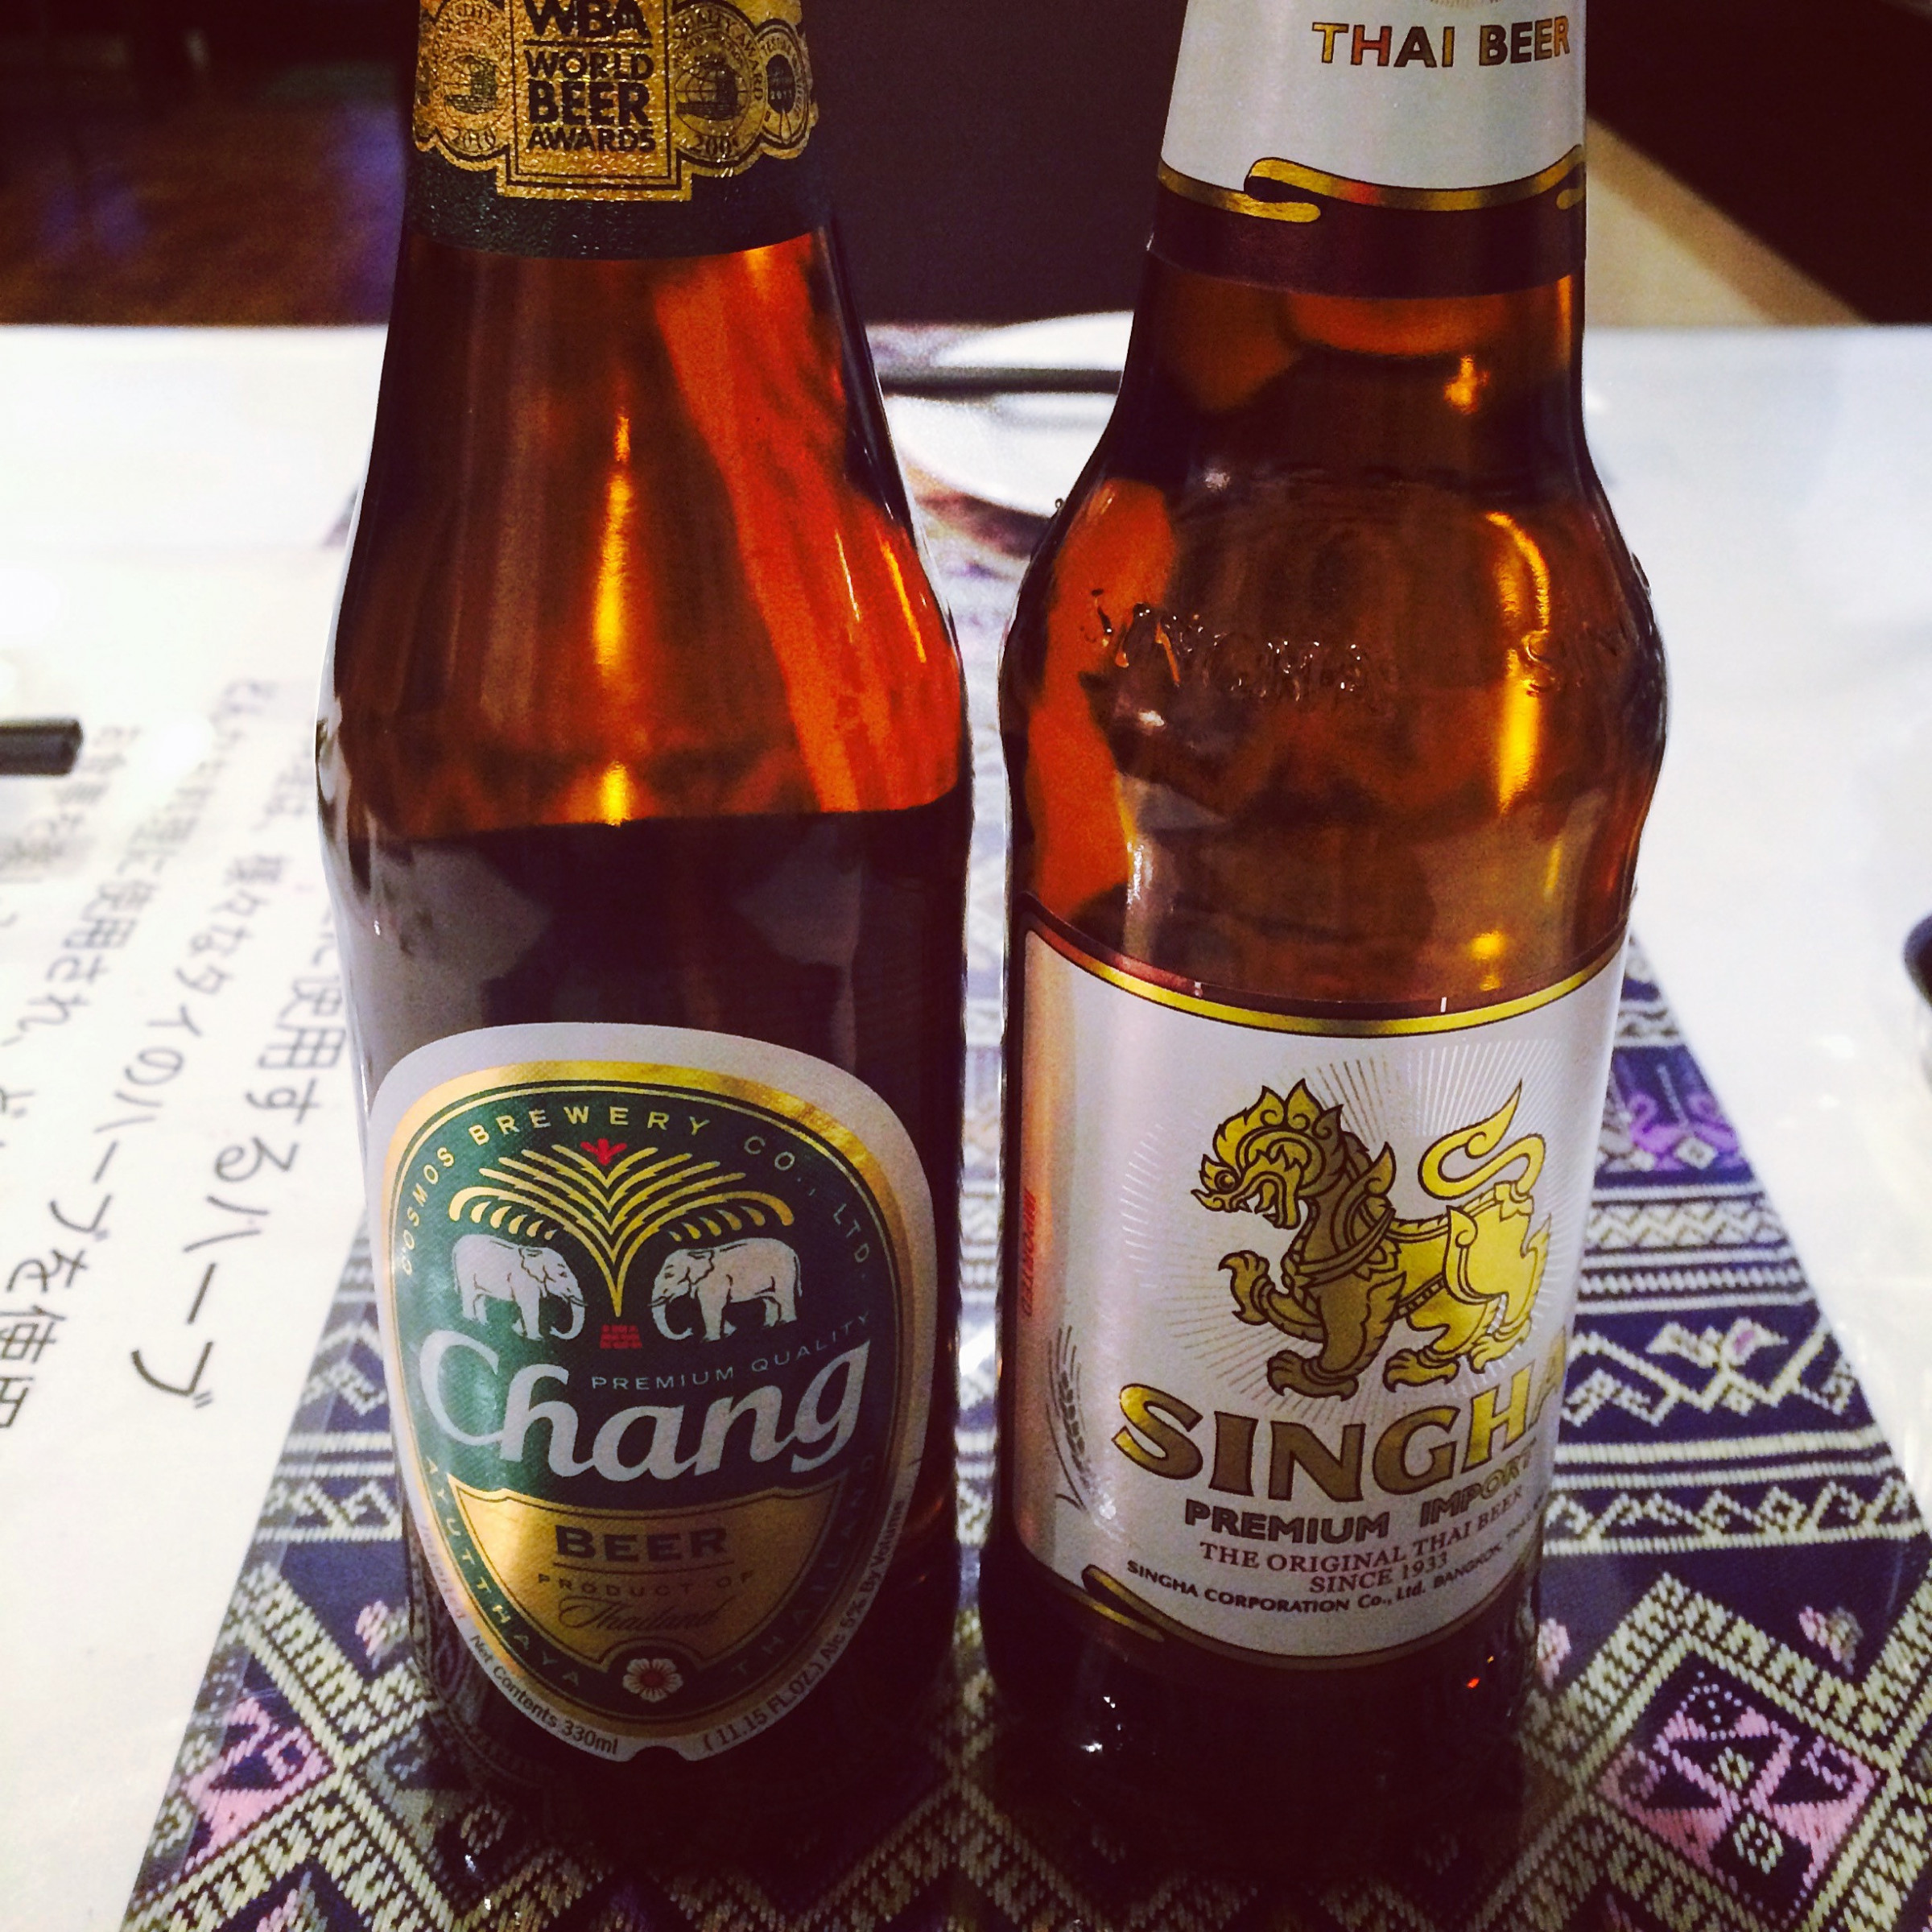 Thai beer☆Singha&amp;Chang